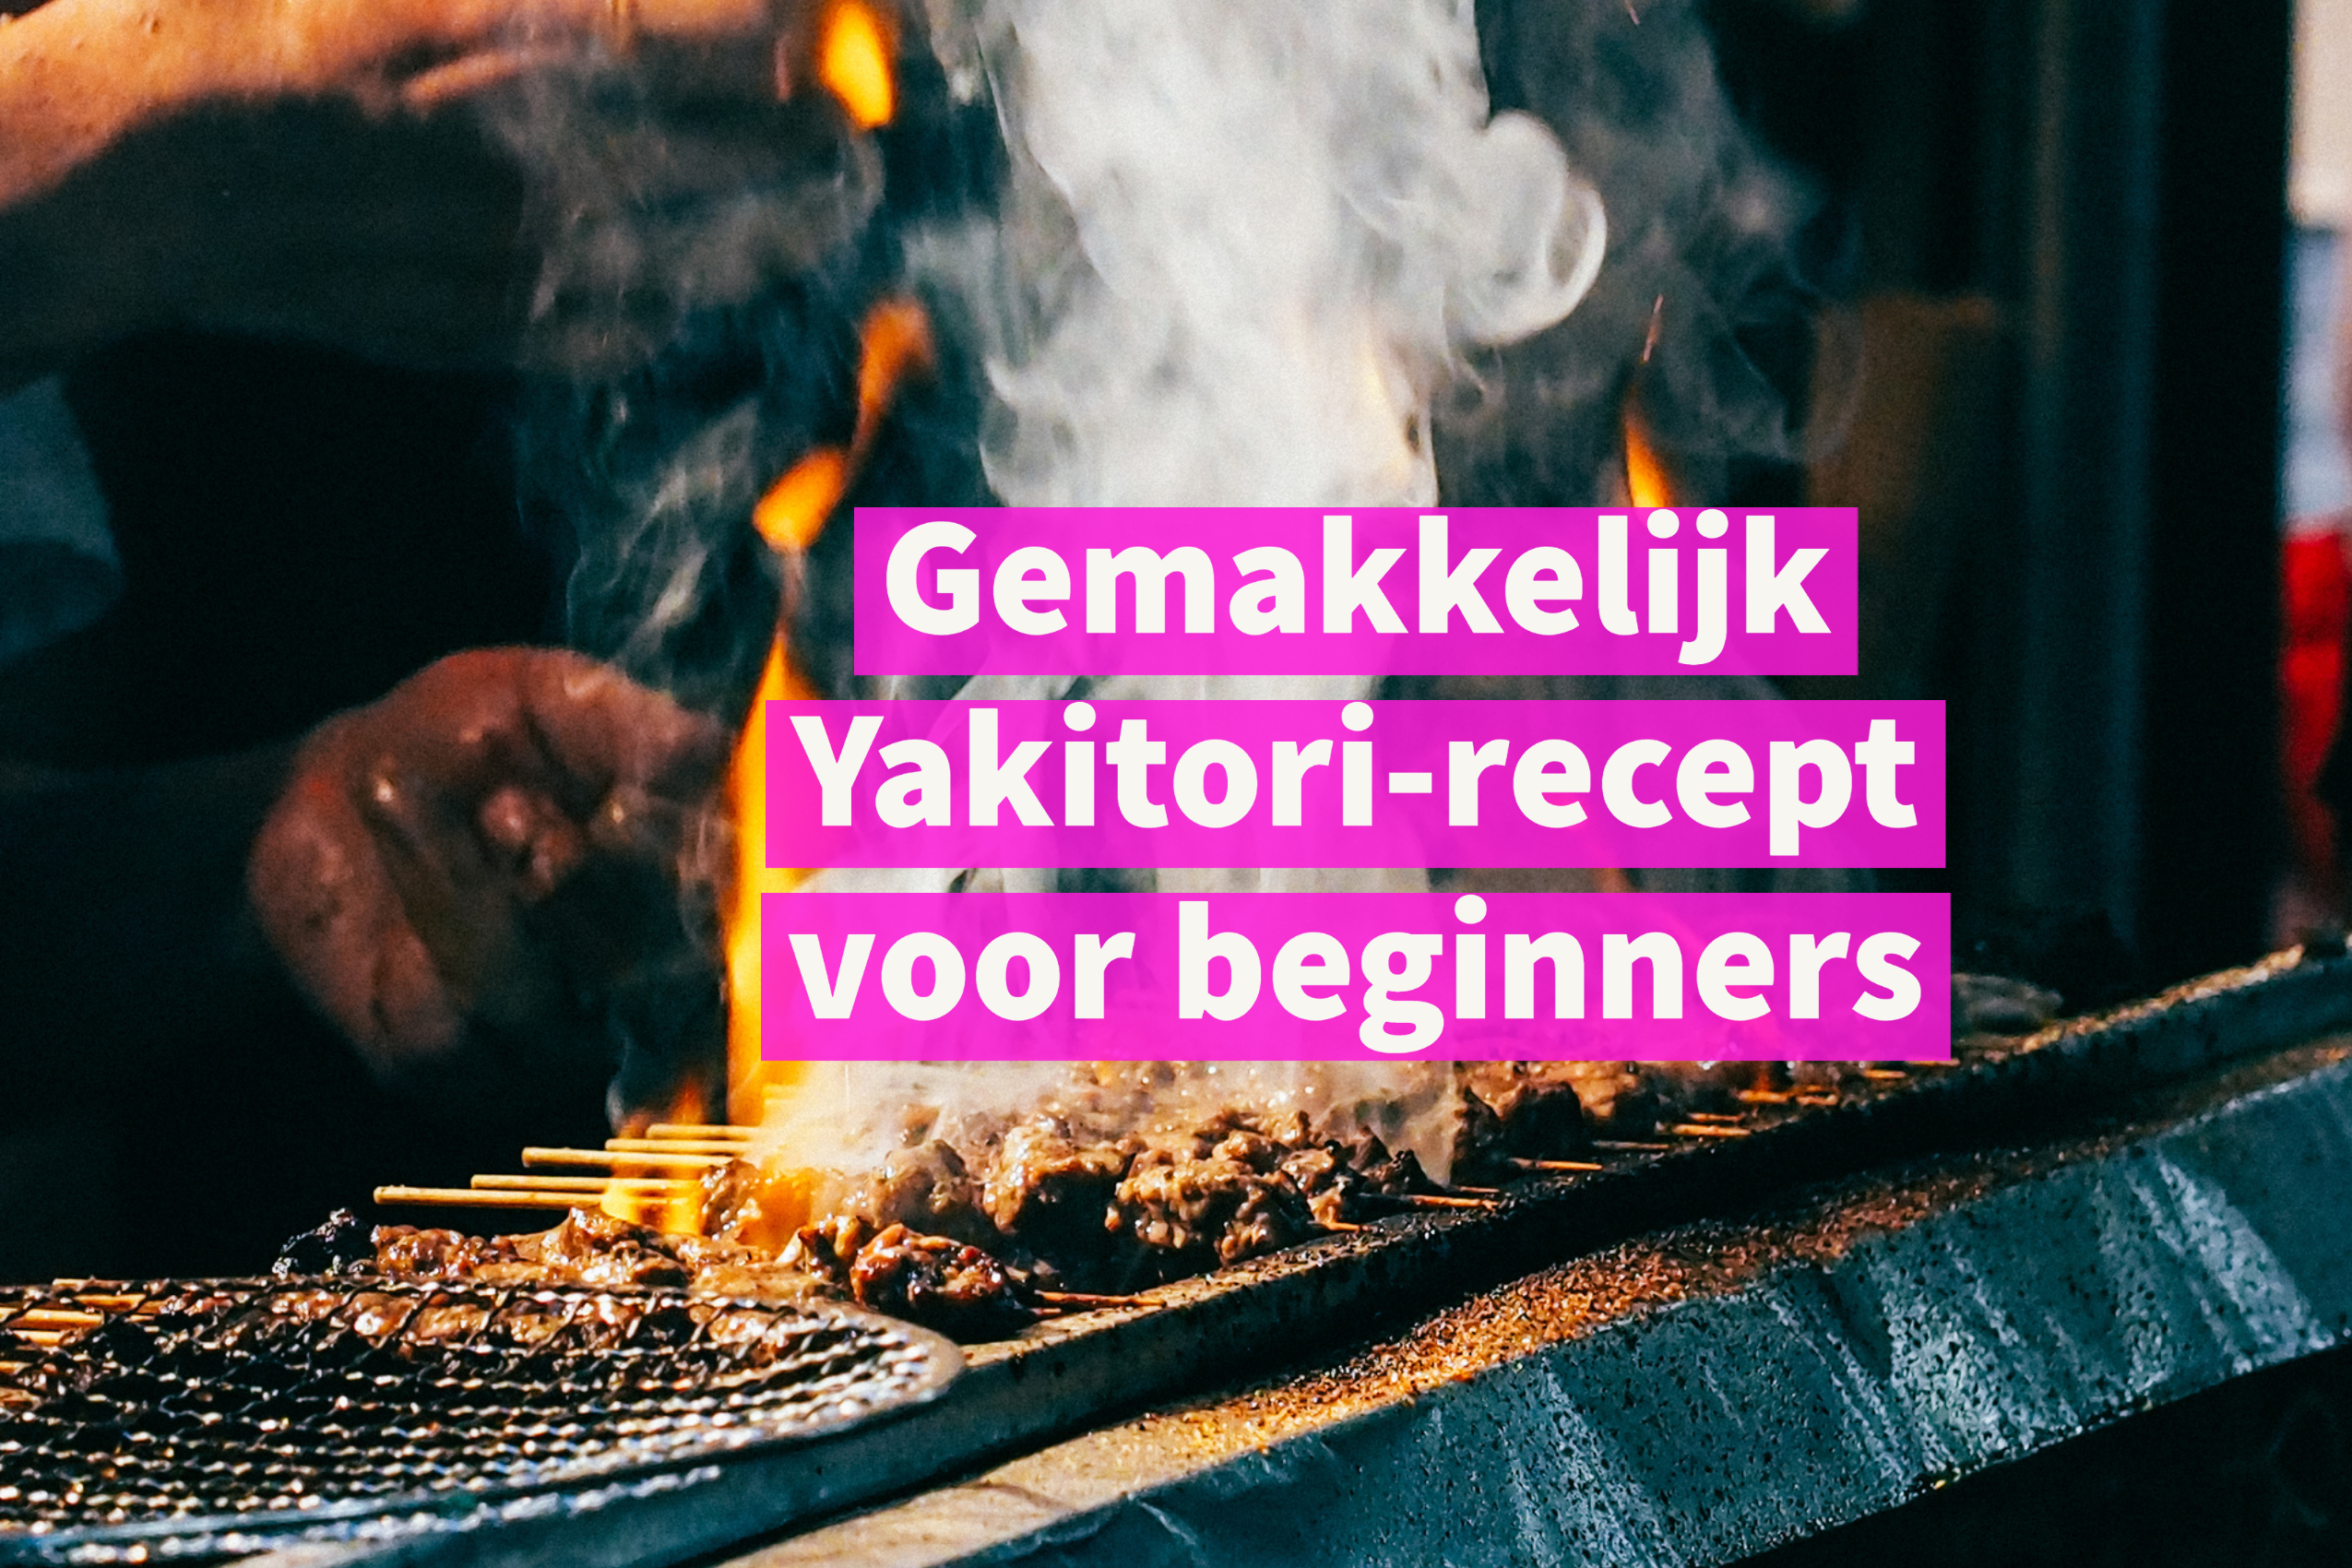 Gemakkelijk Yakitori-recept voor beginners